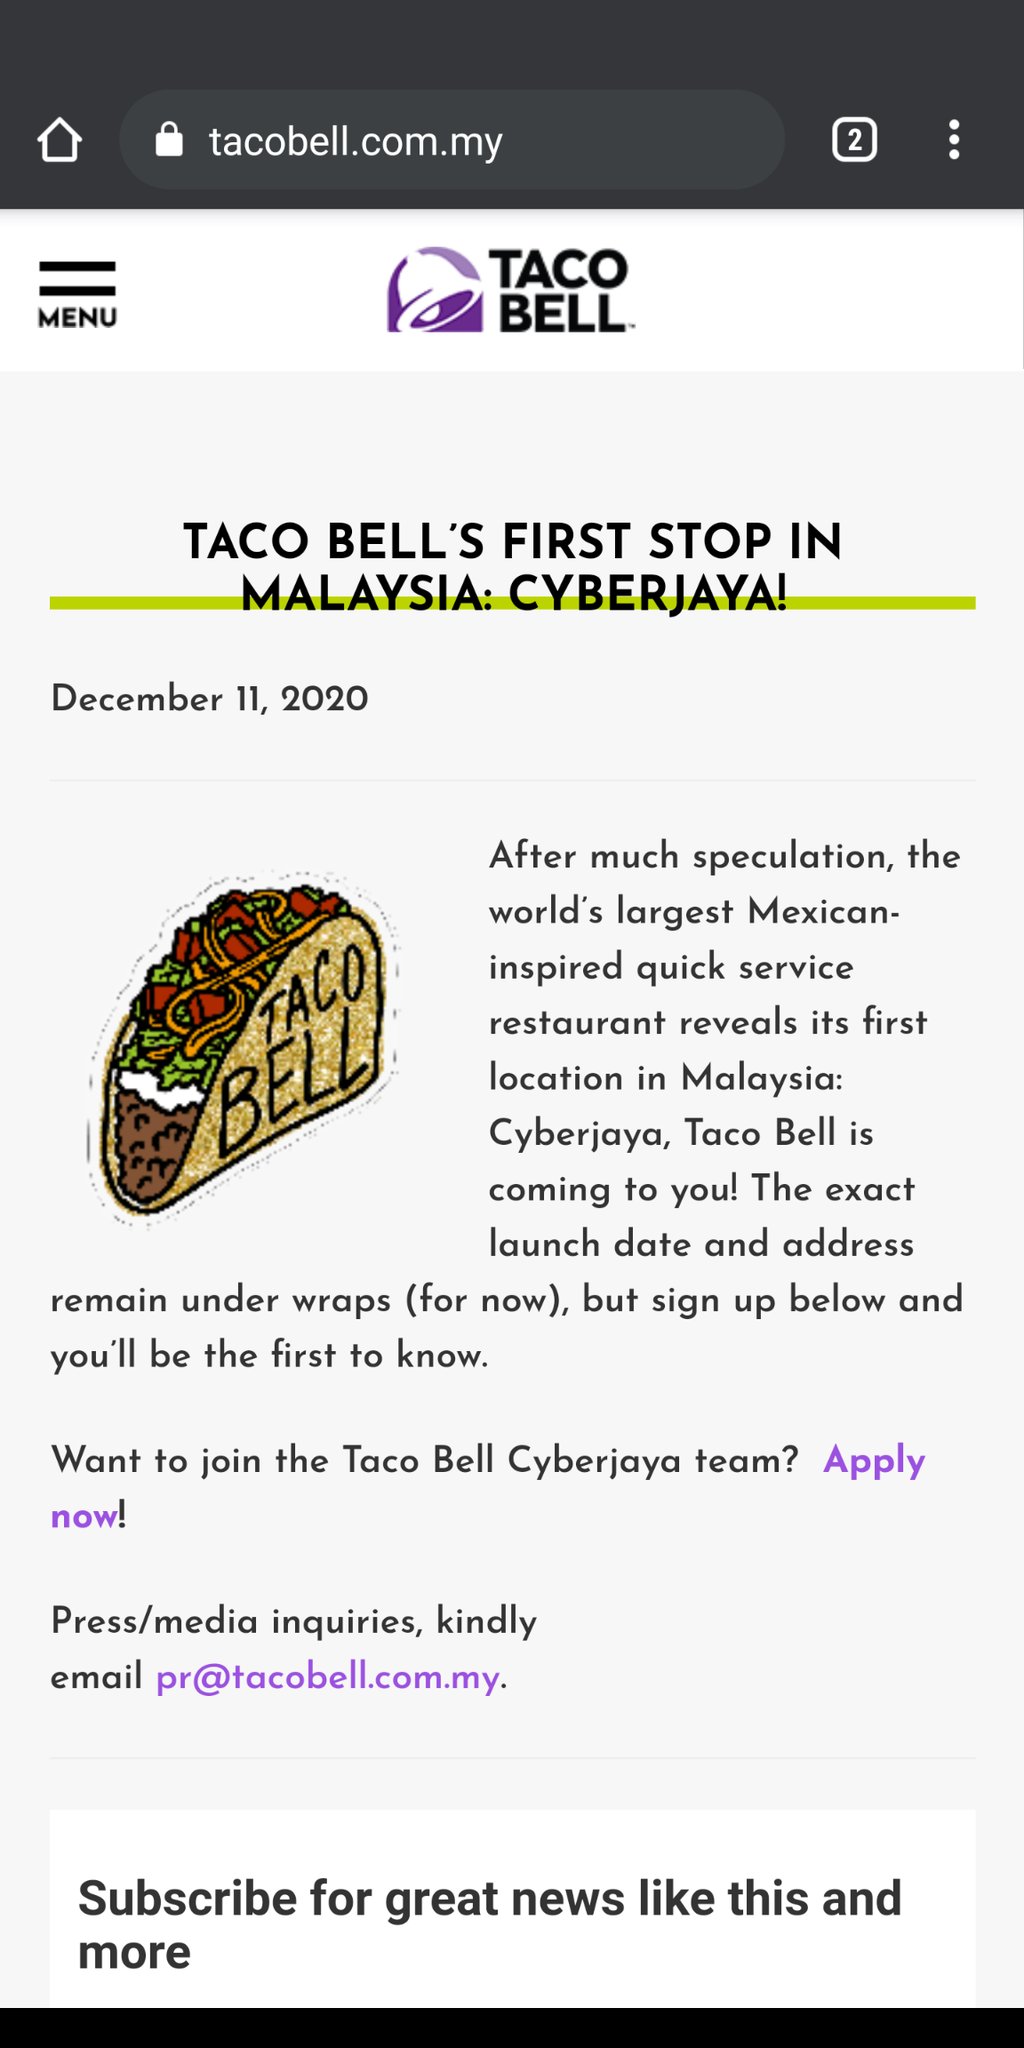 Taco bell cyberjaya menu